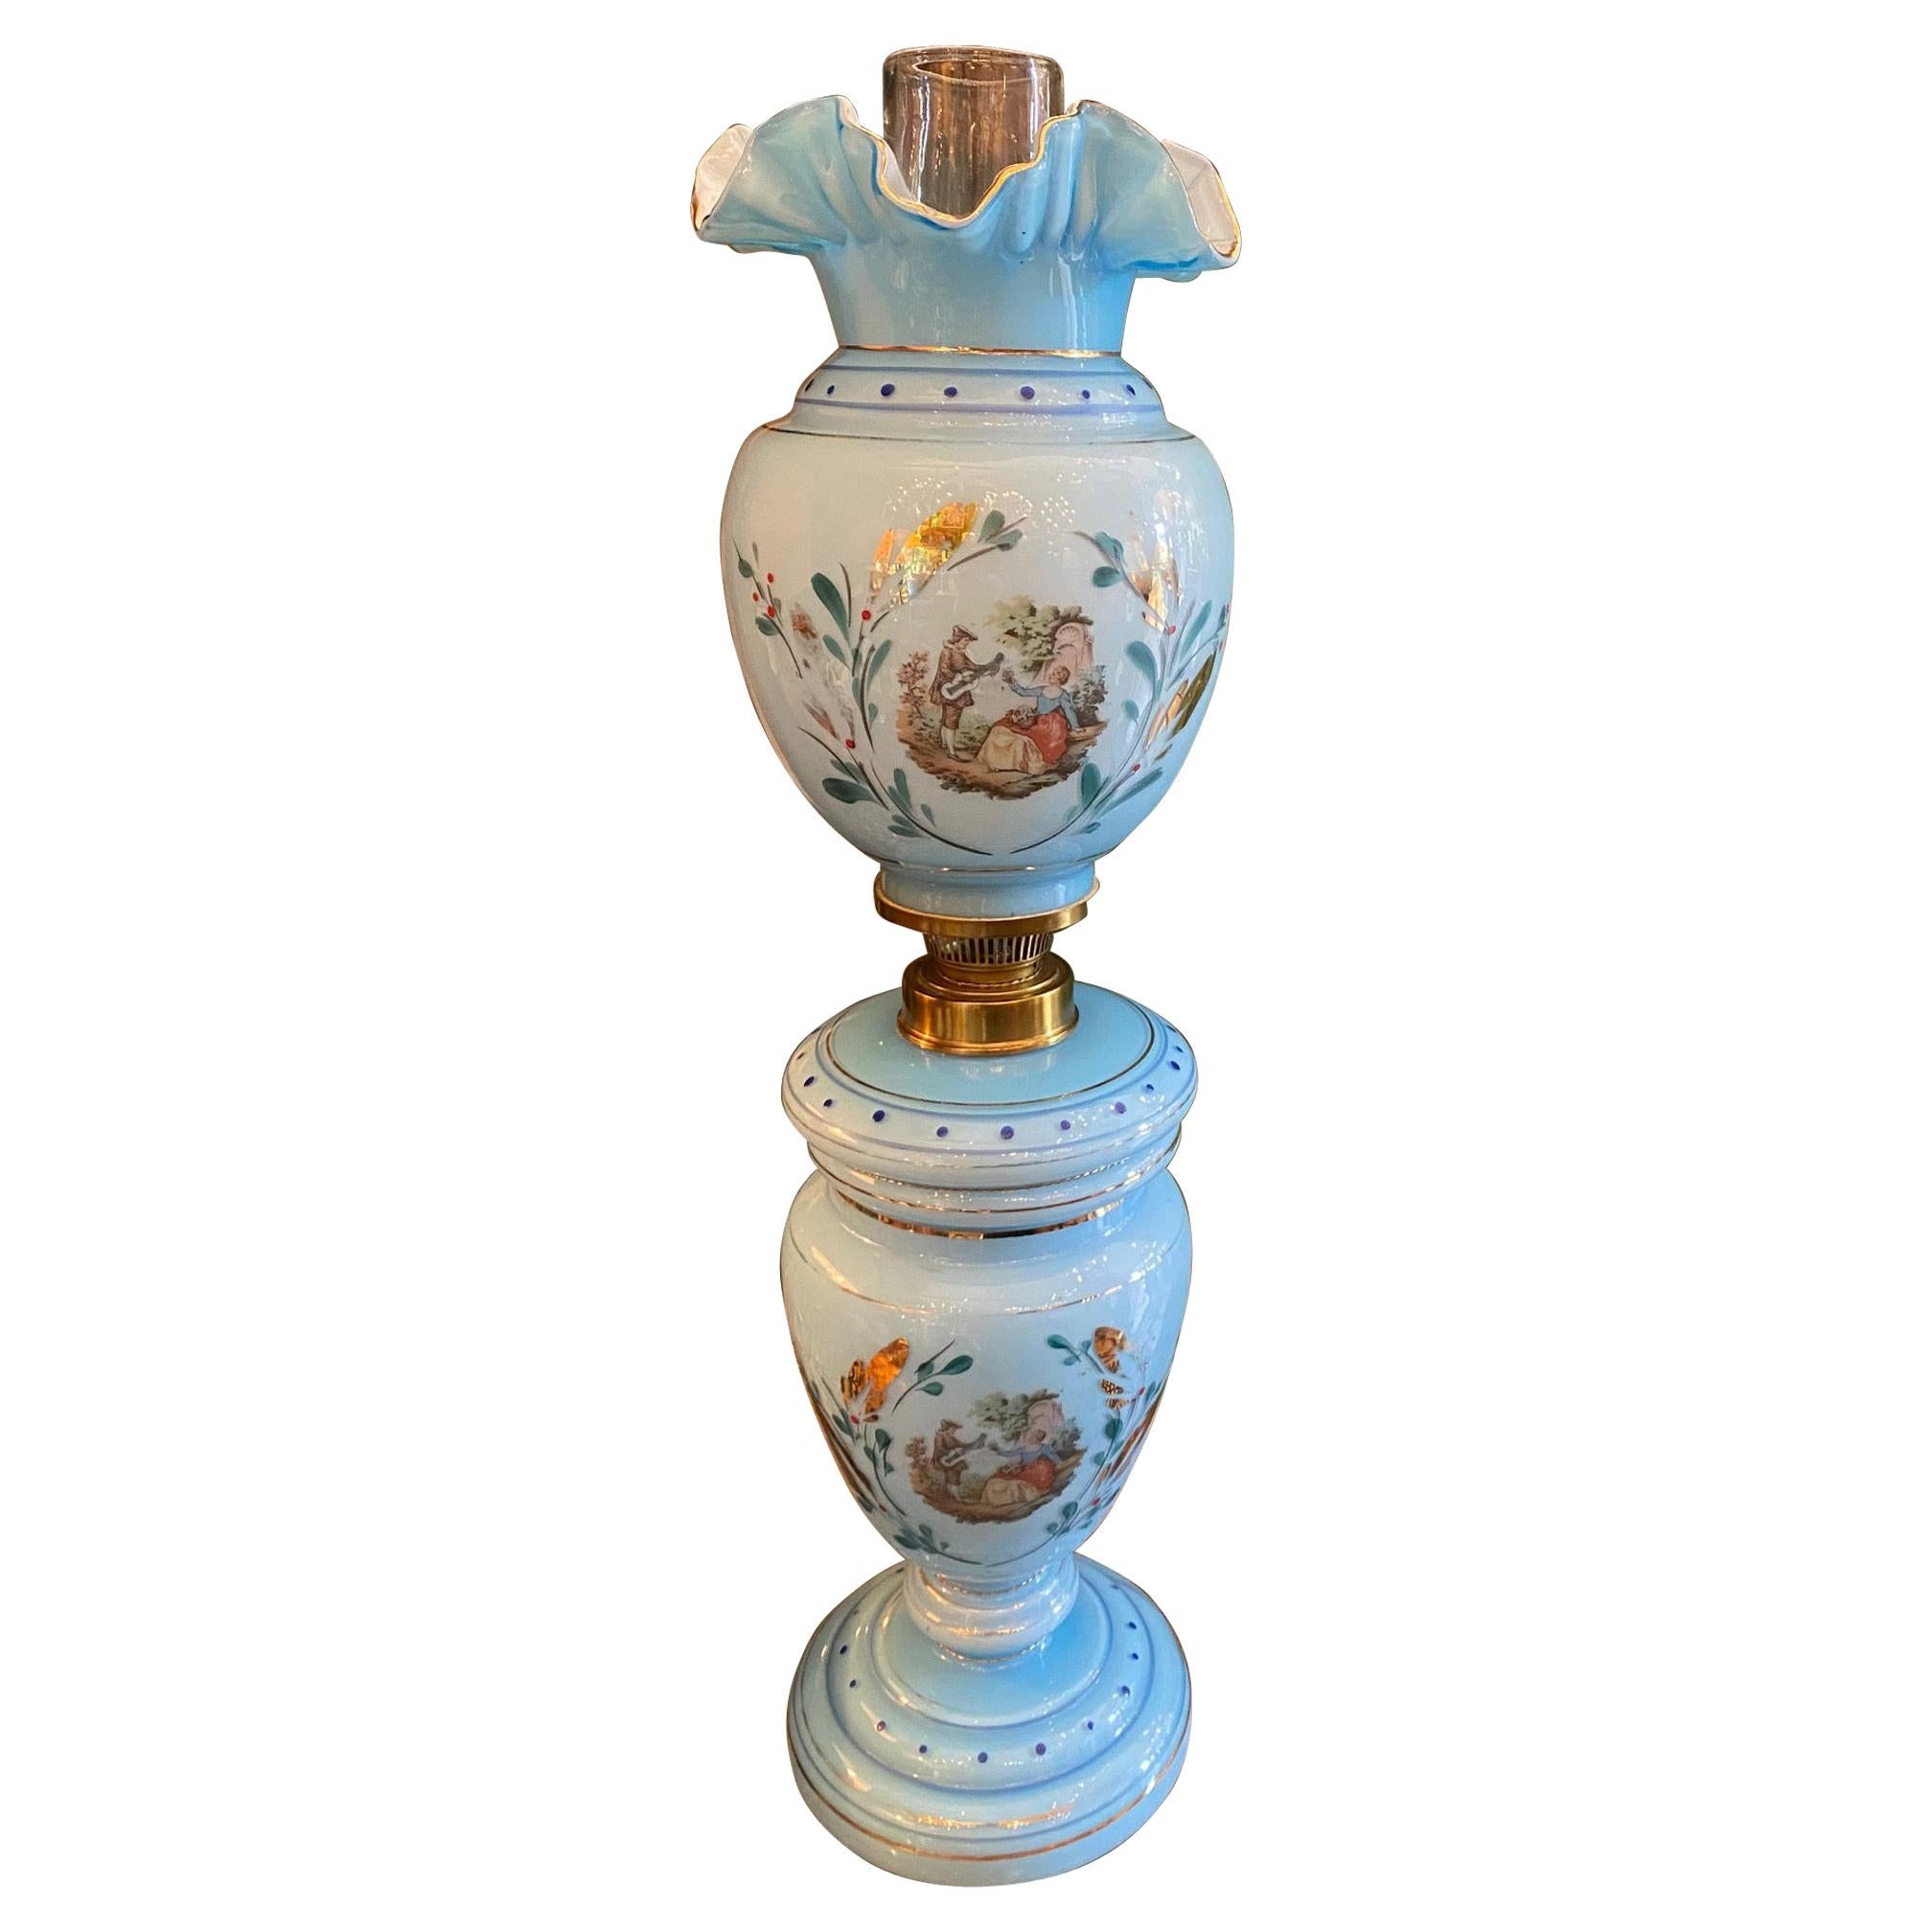 Blue Opaline Glass Side Table Mood Soft Light Lamp Vase Urn Form Decorative CA